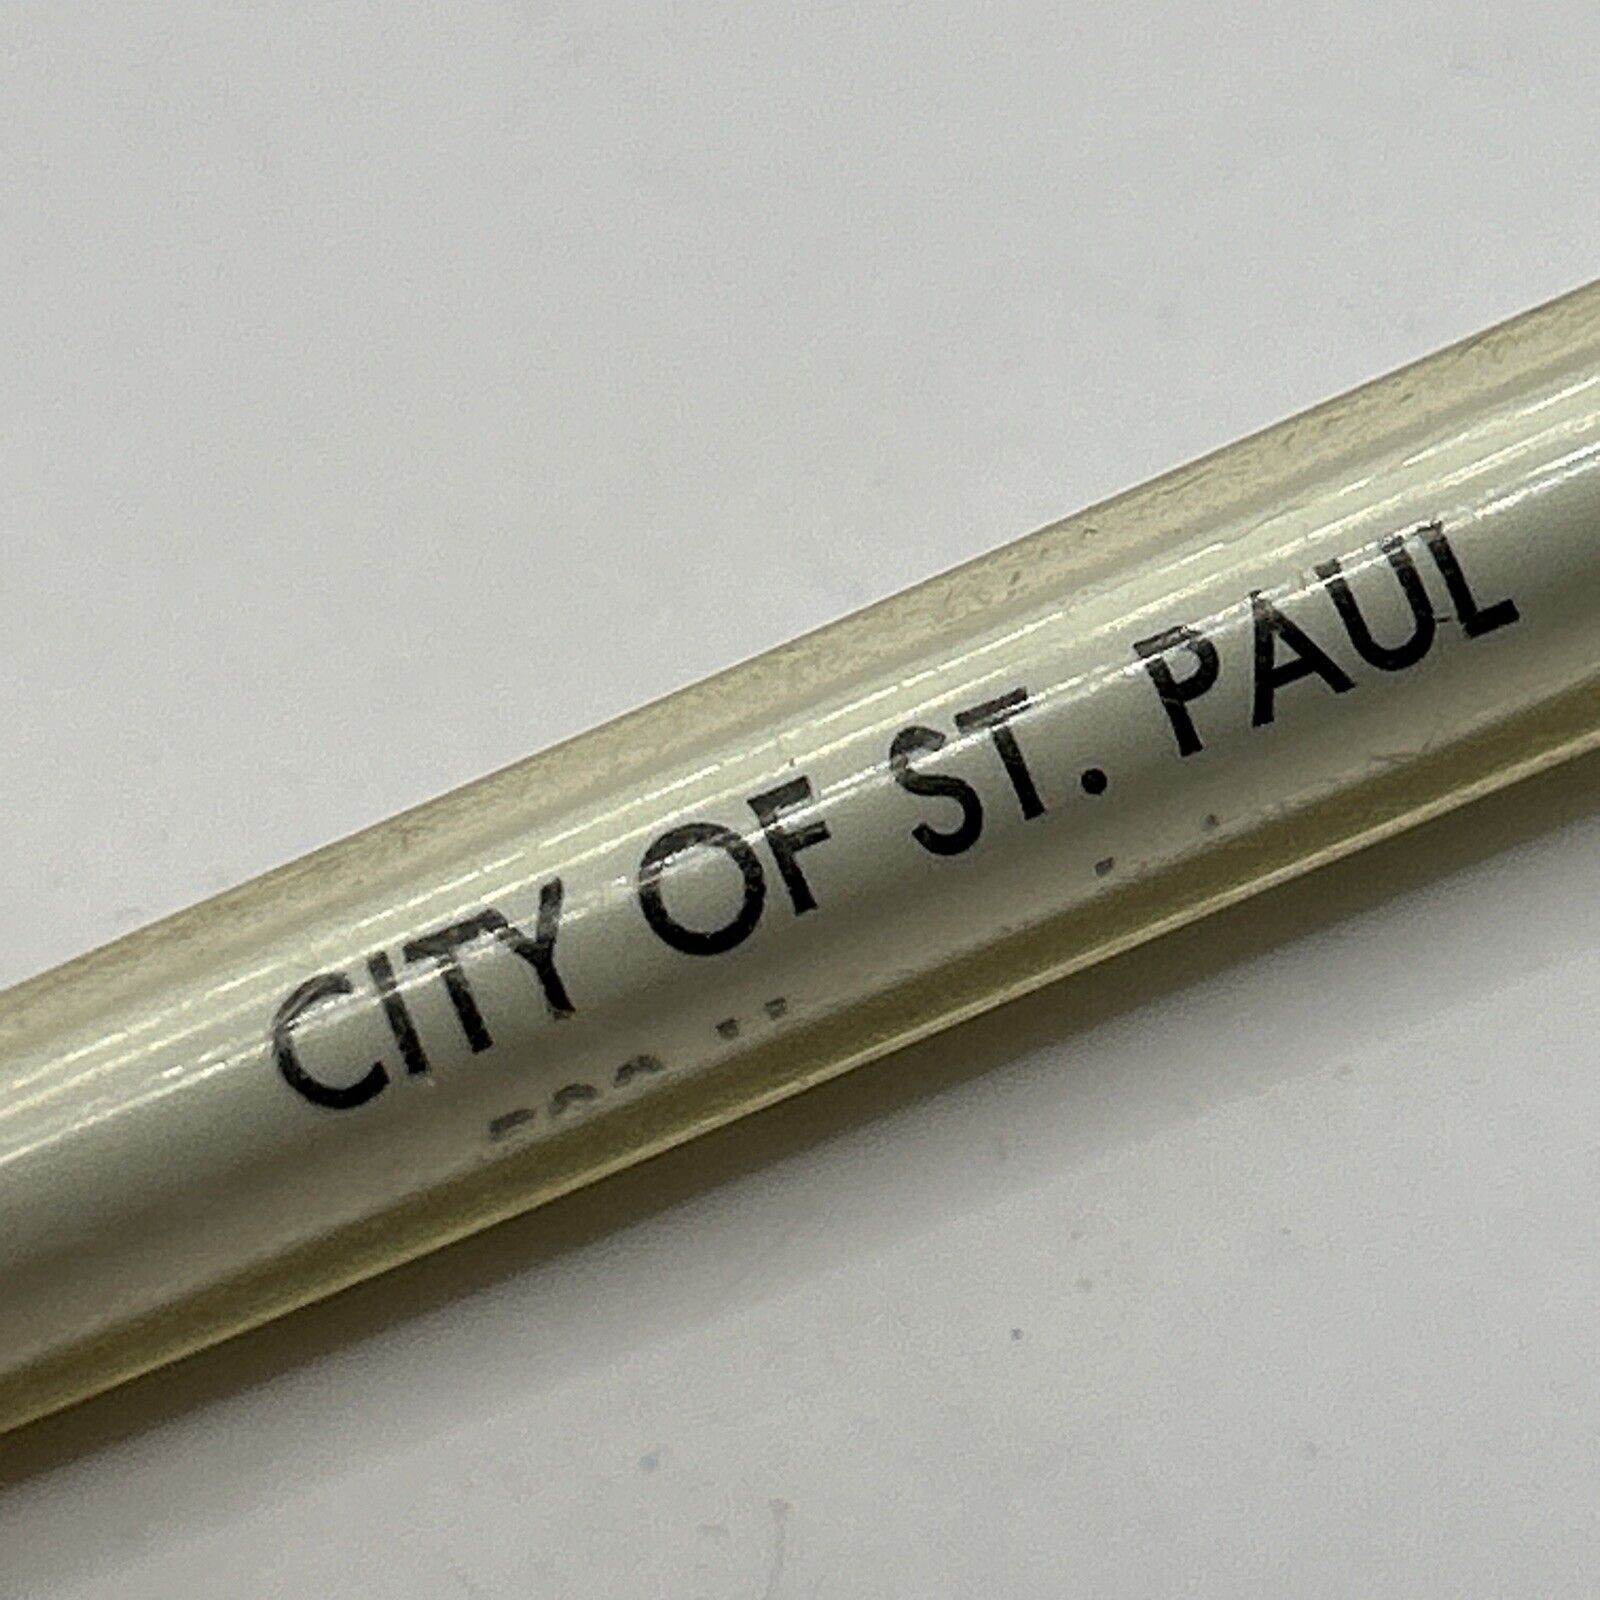 VTG Ballpoint Pen City Of St. Paul Nebraska